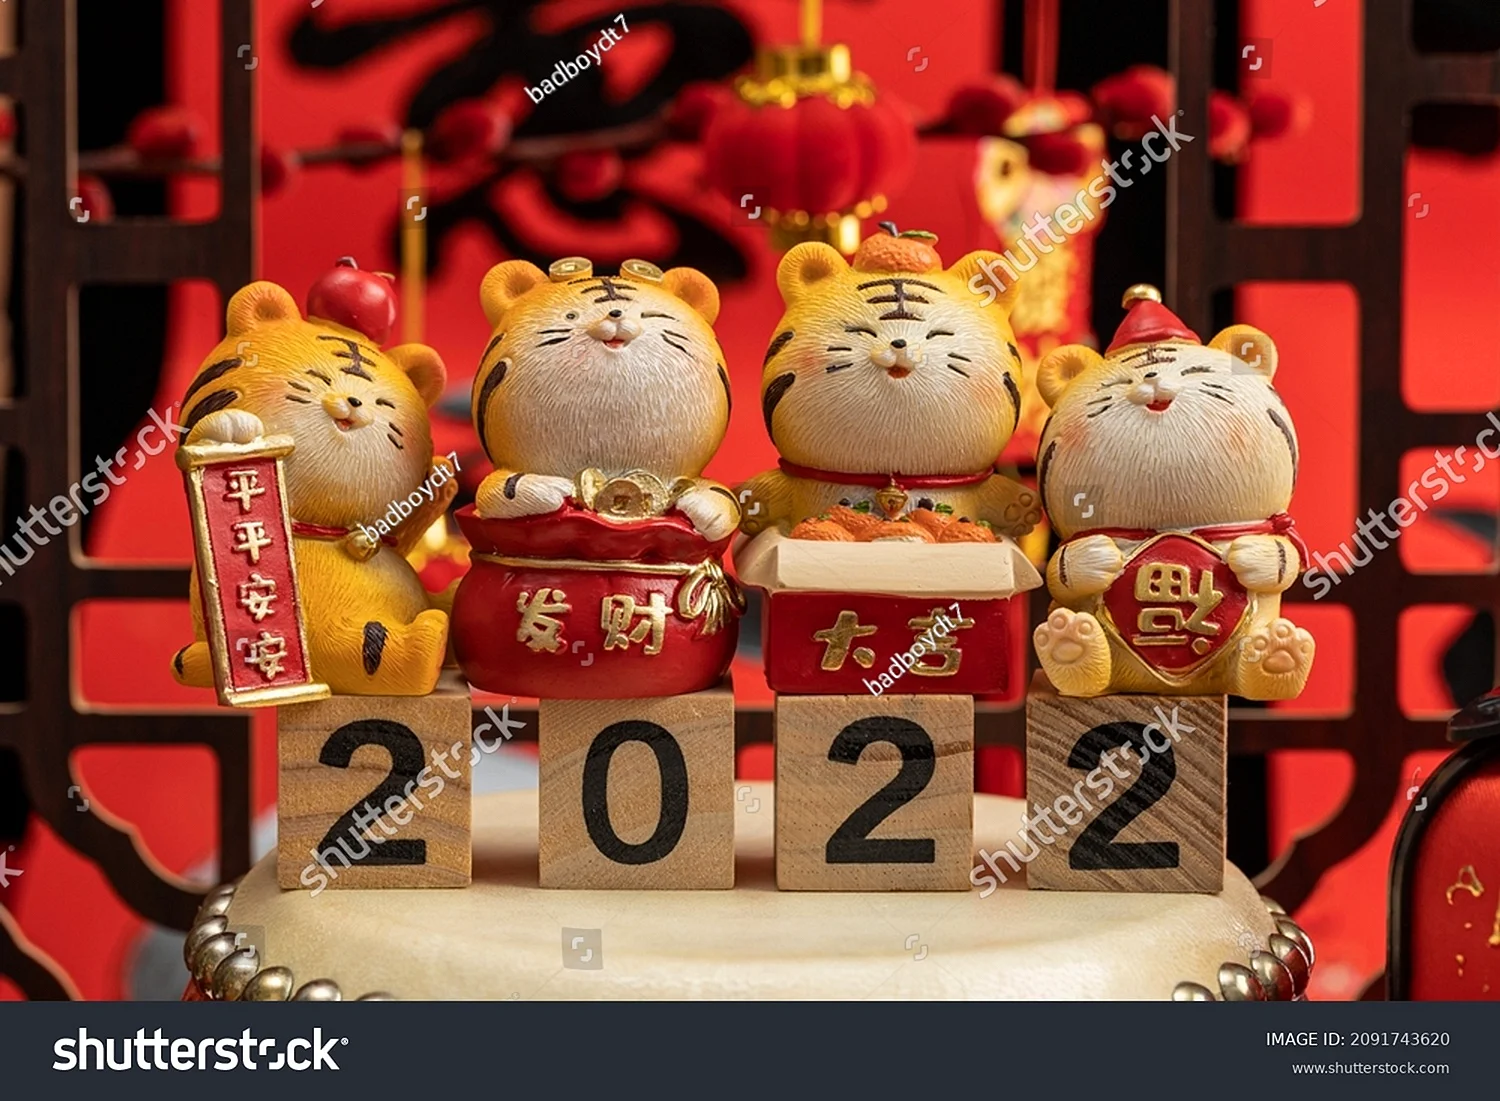 Китайский новый год тигр